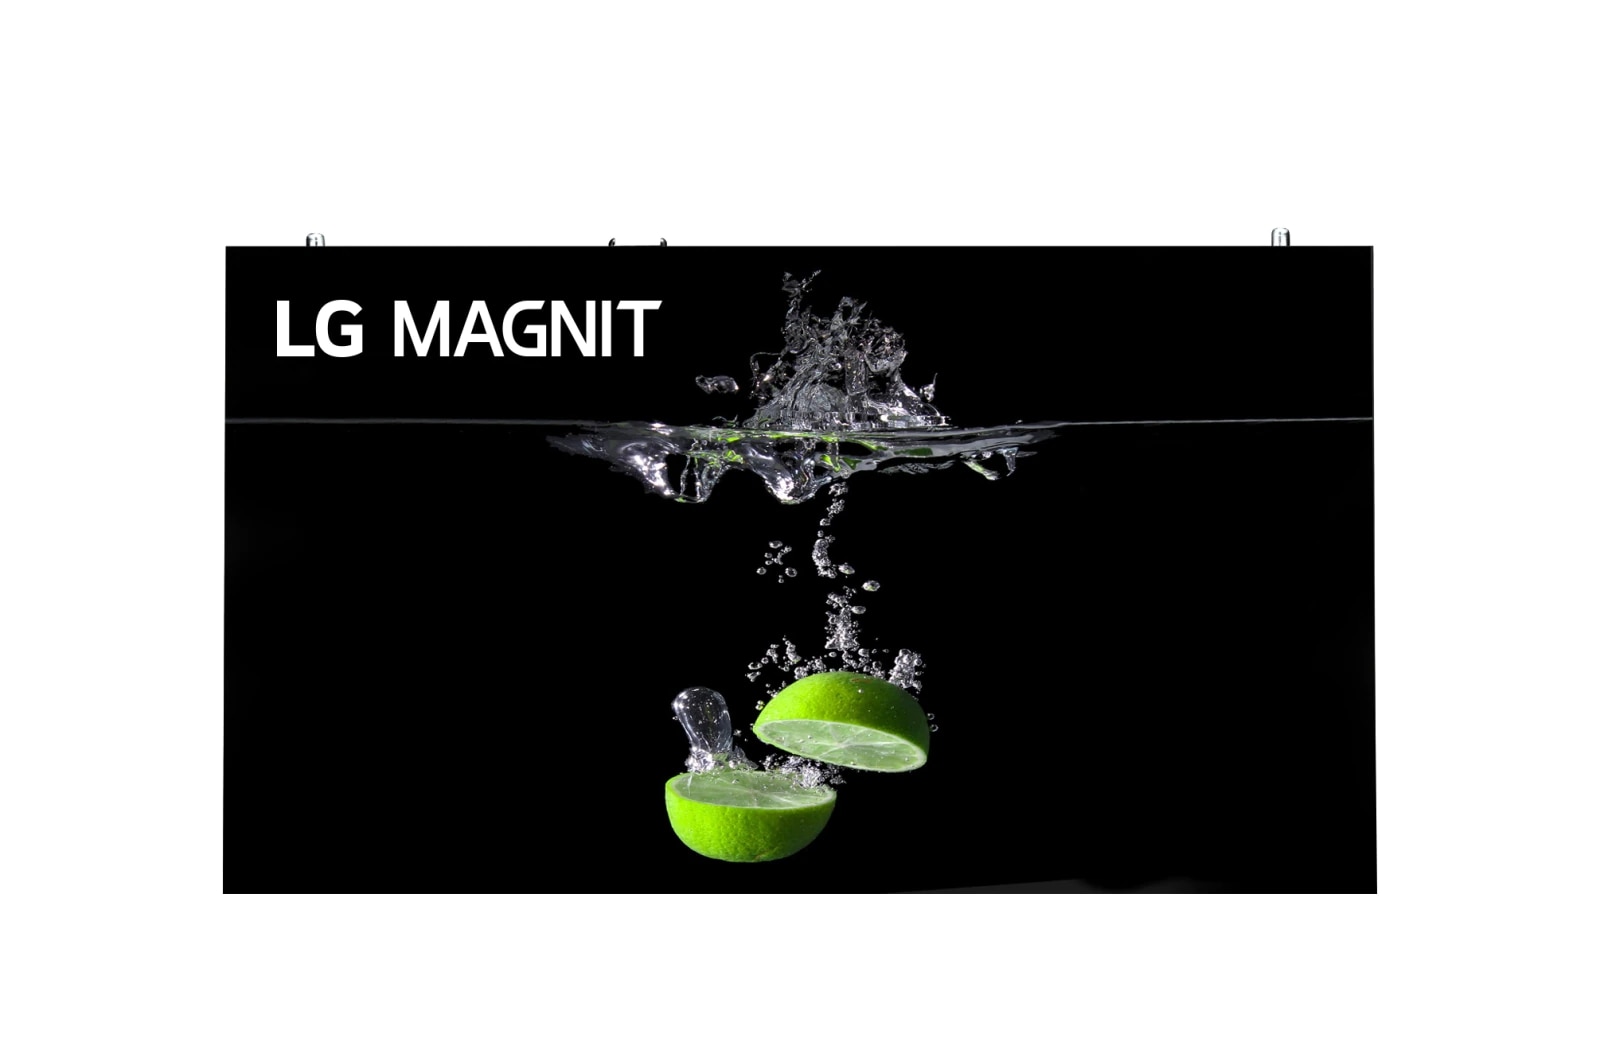 LG MAGNIT, LSAB012-N1